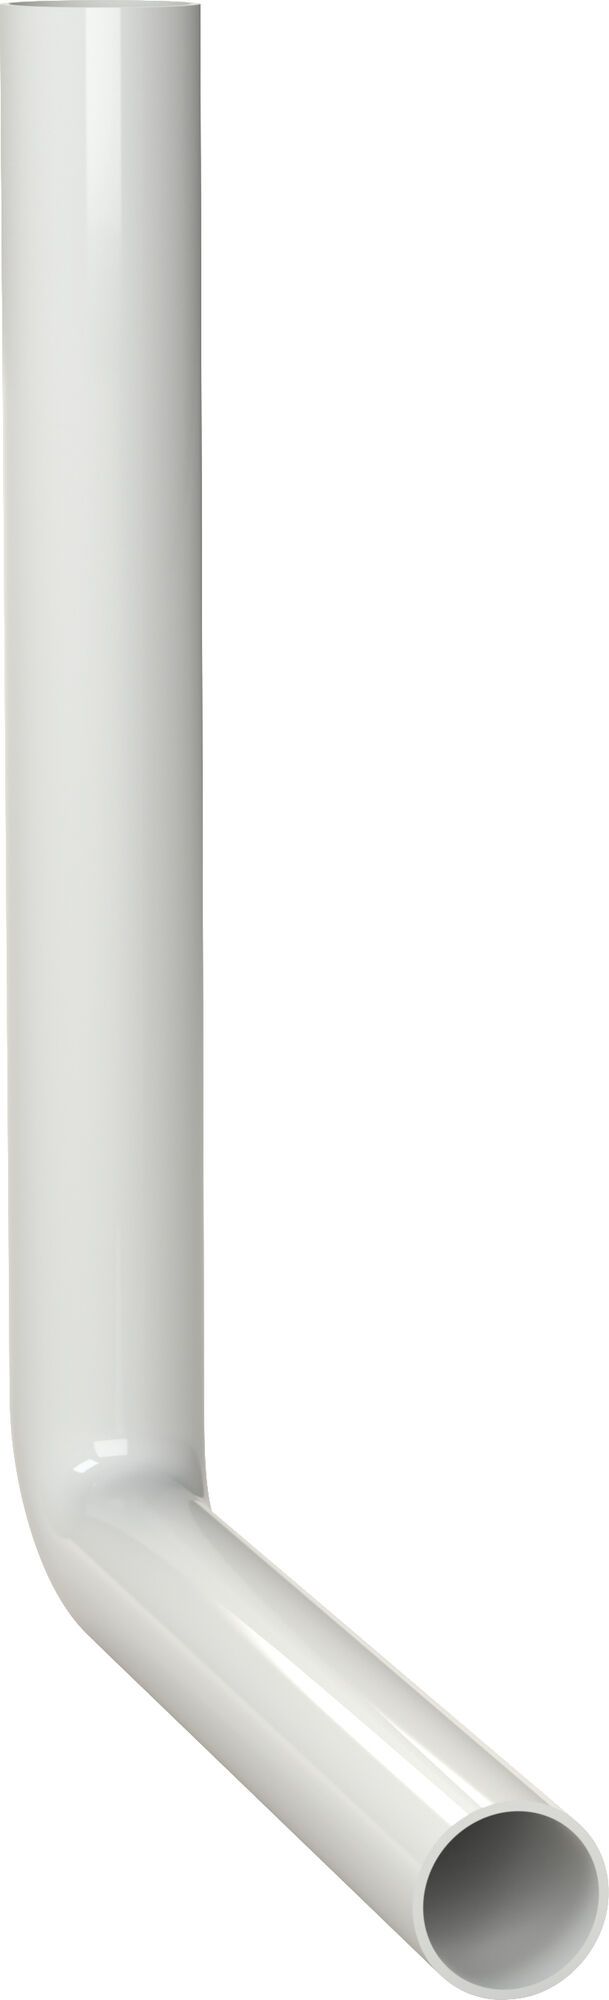 KOLANO SPUSTOWE 390 x 350 mm, biały